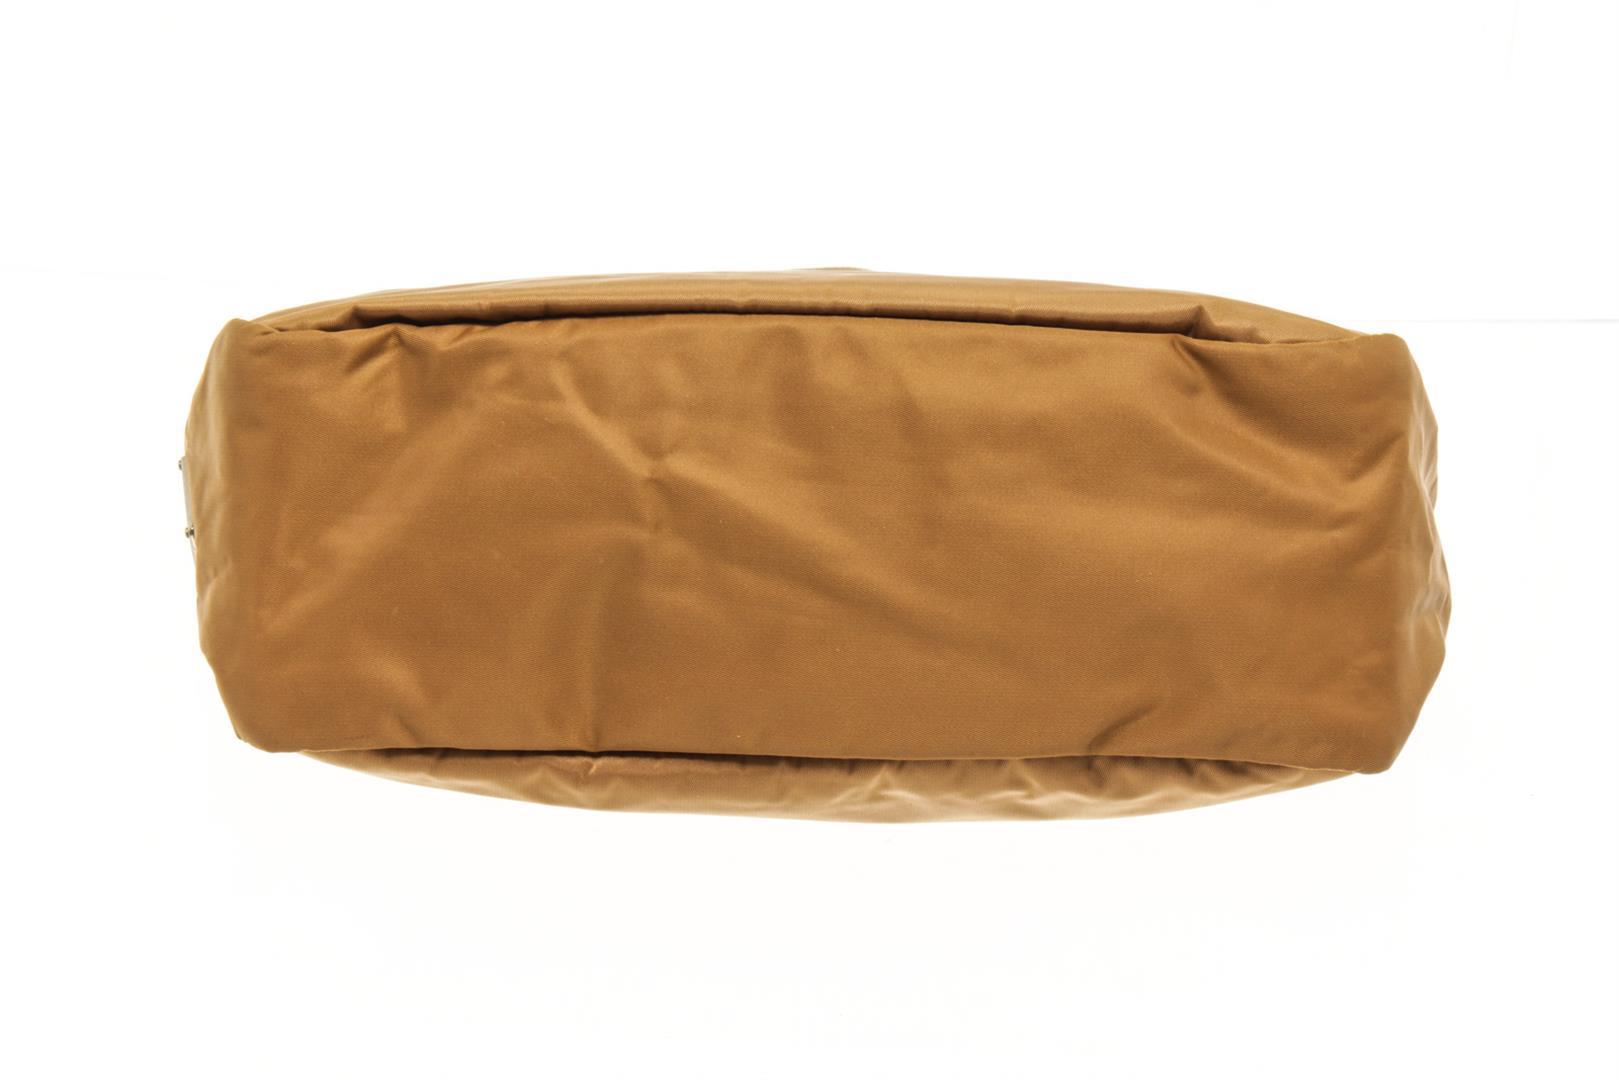 Prada Brown Nylon Tote Bag